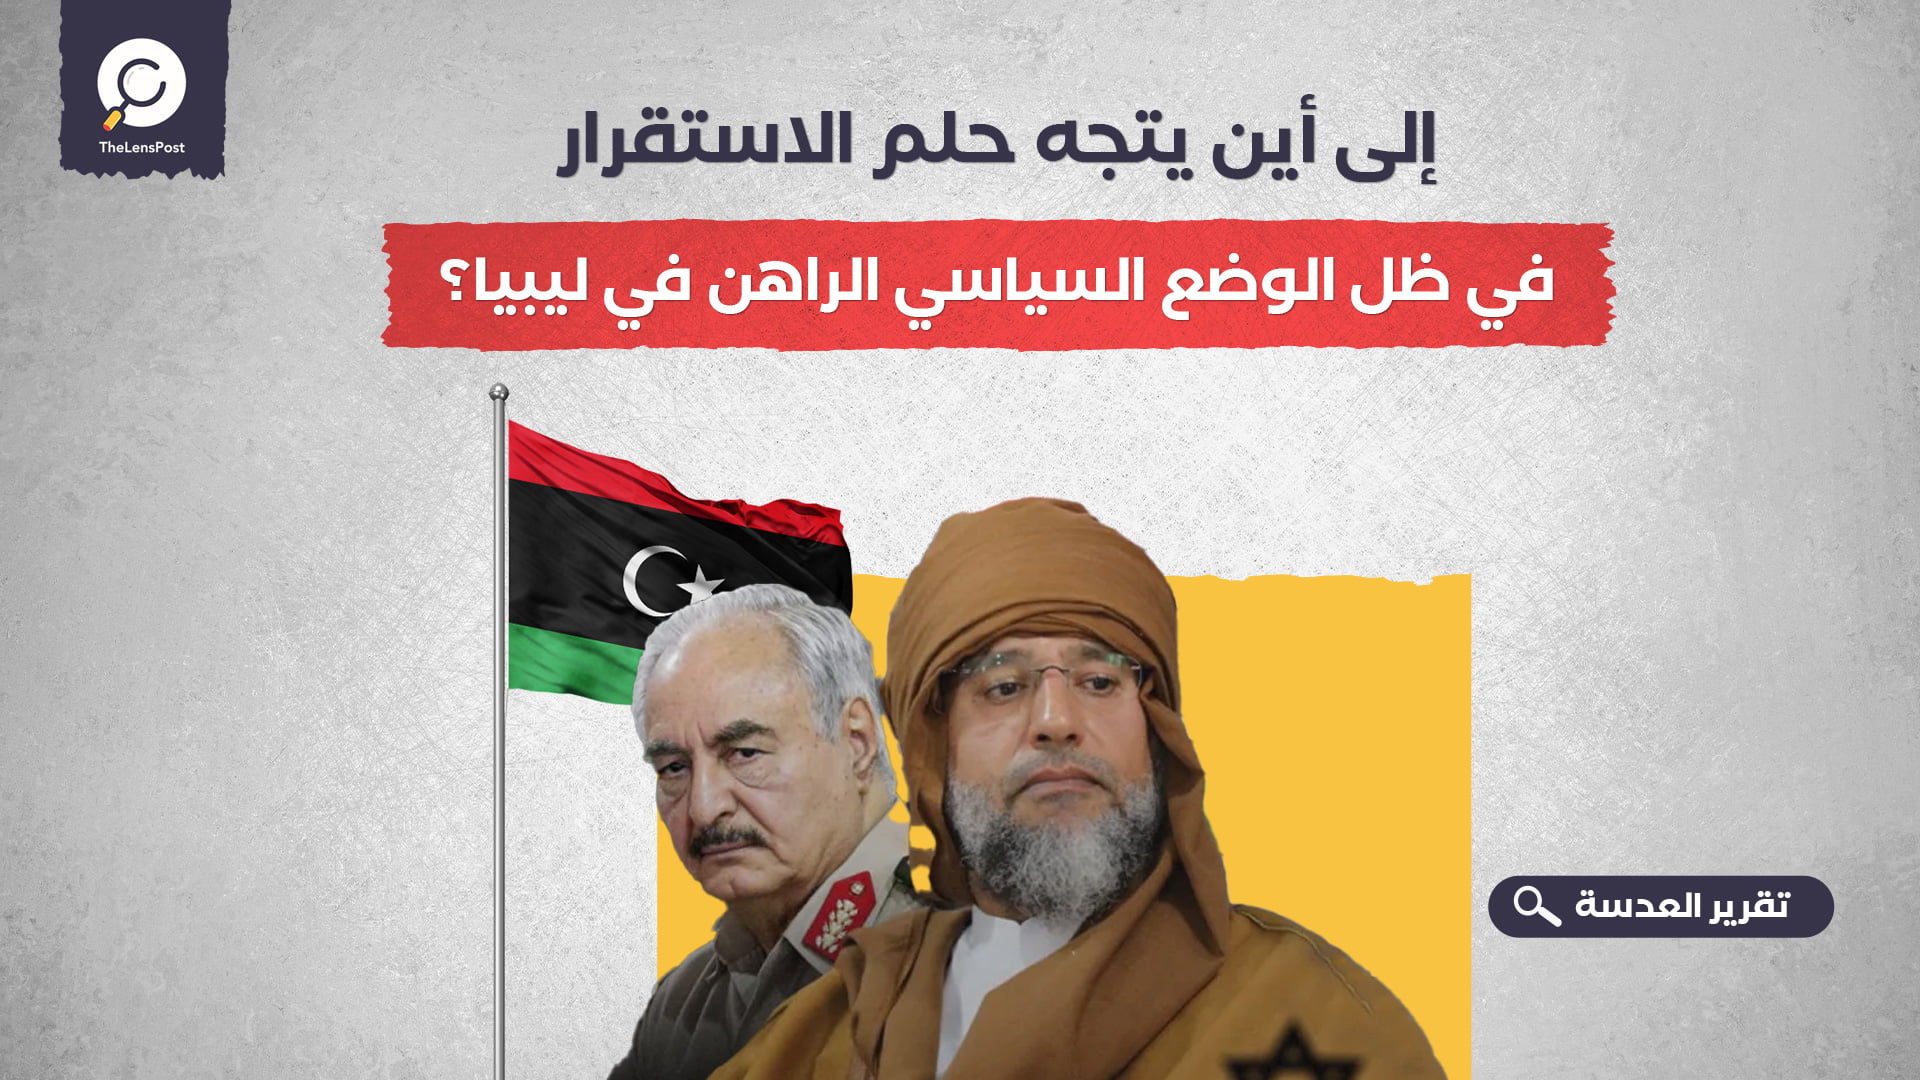 إلى أين يتجه حلم الاستقرار في ظل الوضع السياسي الراهن في ليبيا؟